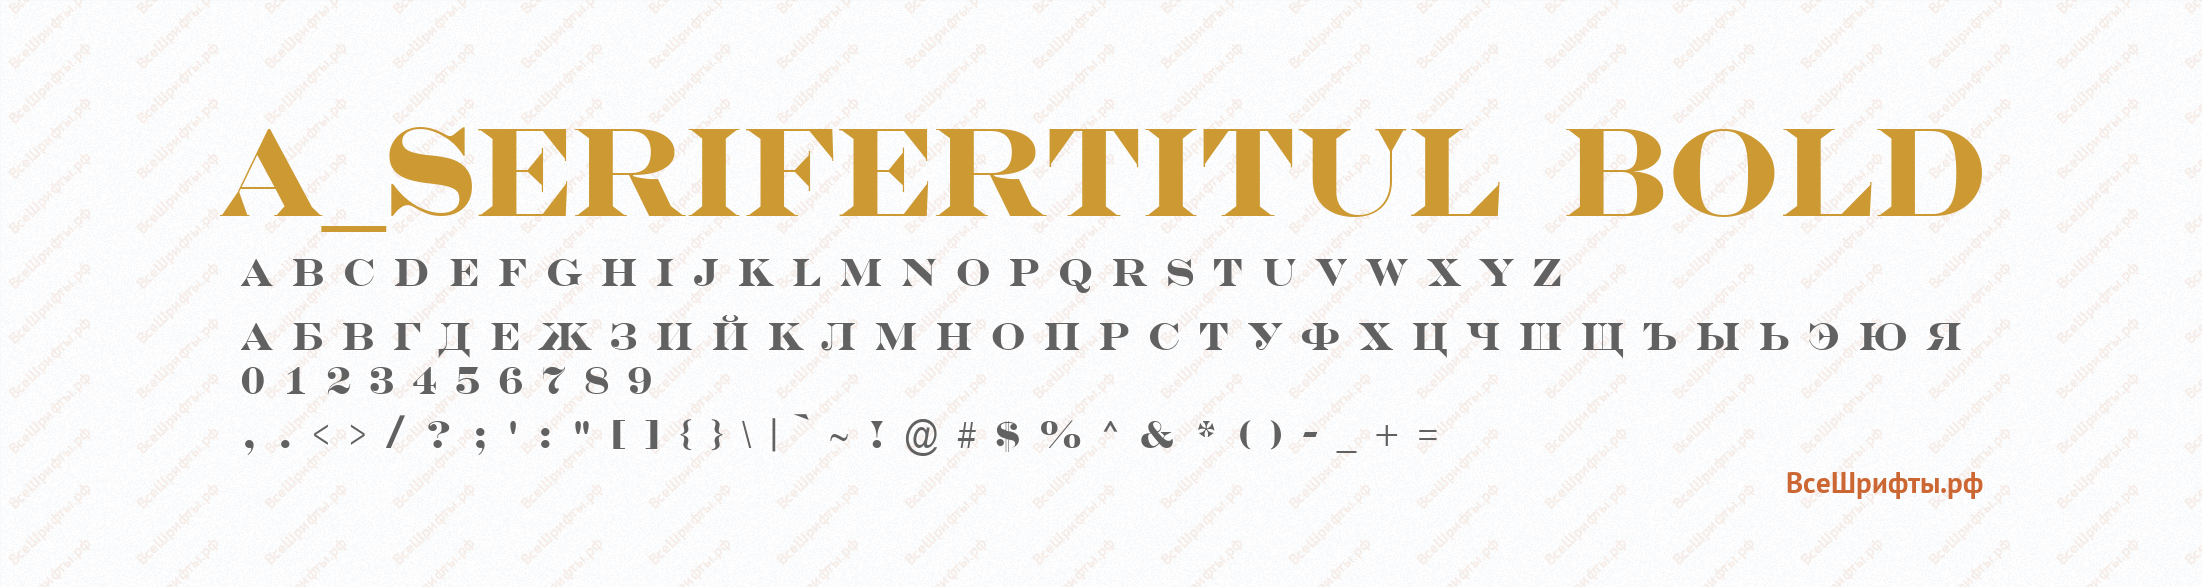 Шрифт a_SeriferTitul Bold